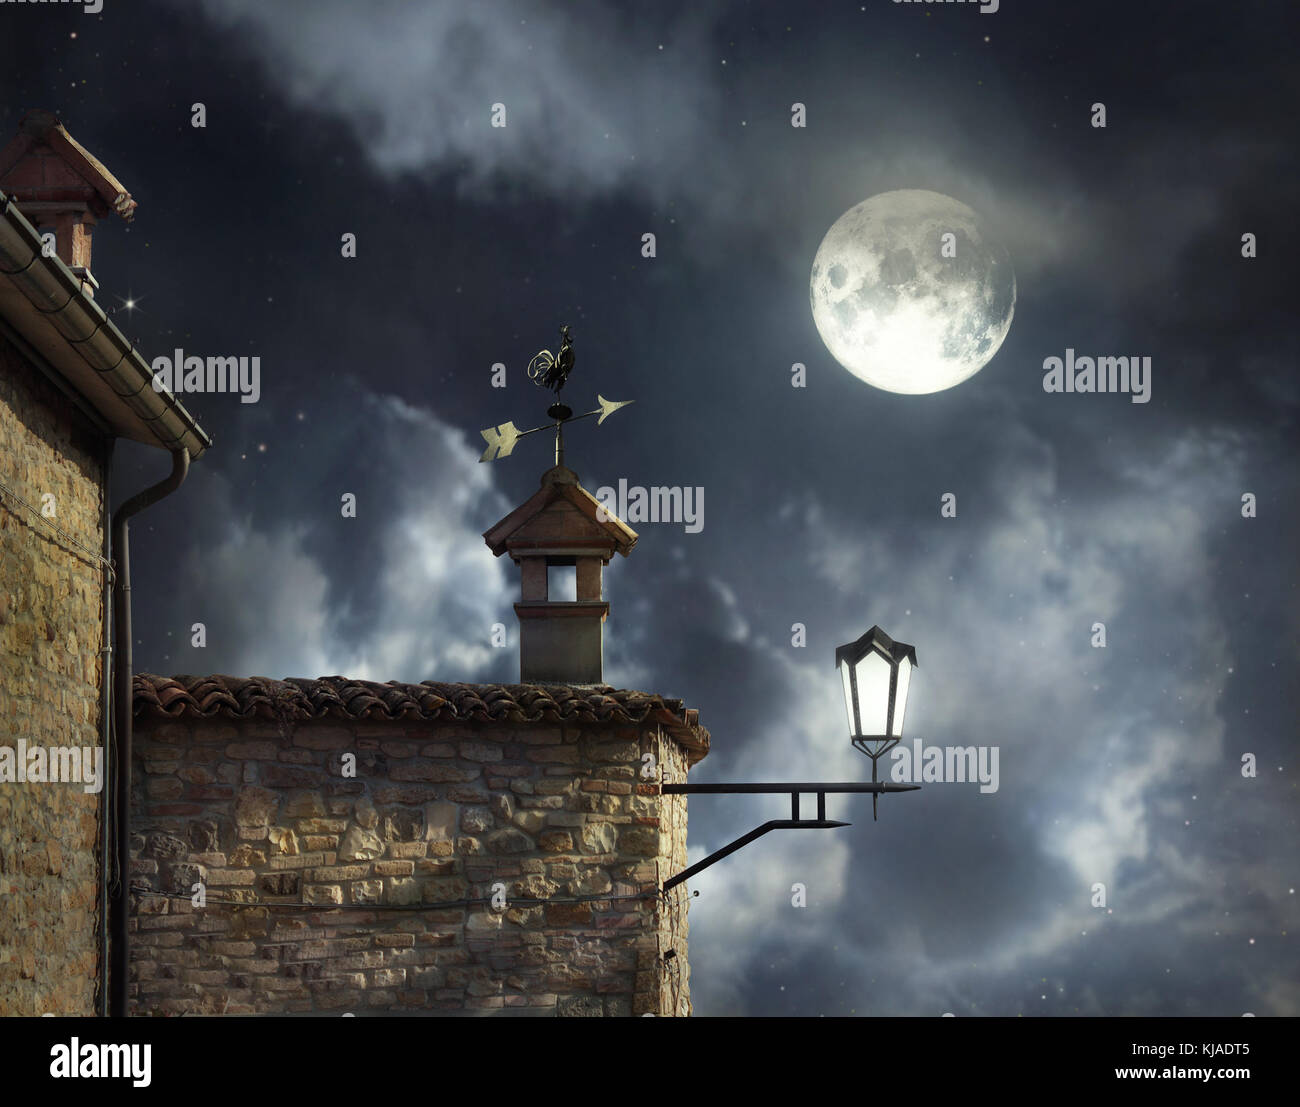 Meubles anciens toits avec girouette coq et cheminées dans un beau ciel de nuit avec la pleine lune et nuages Banque D'Images